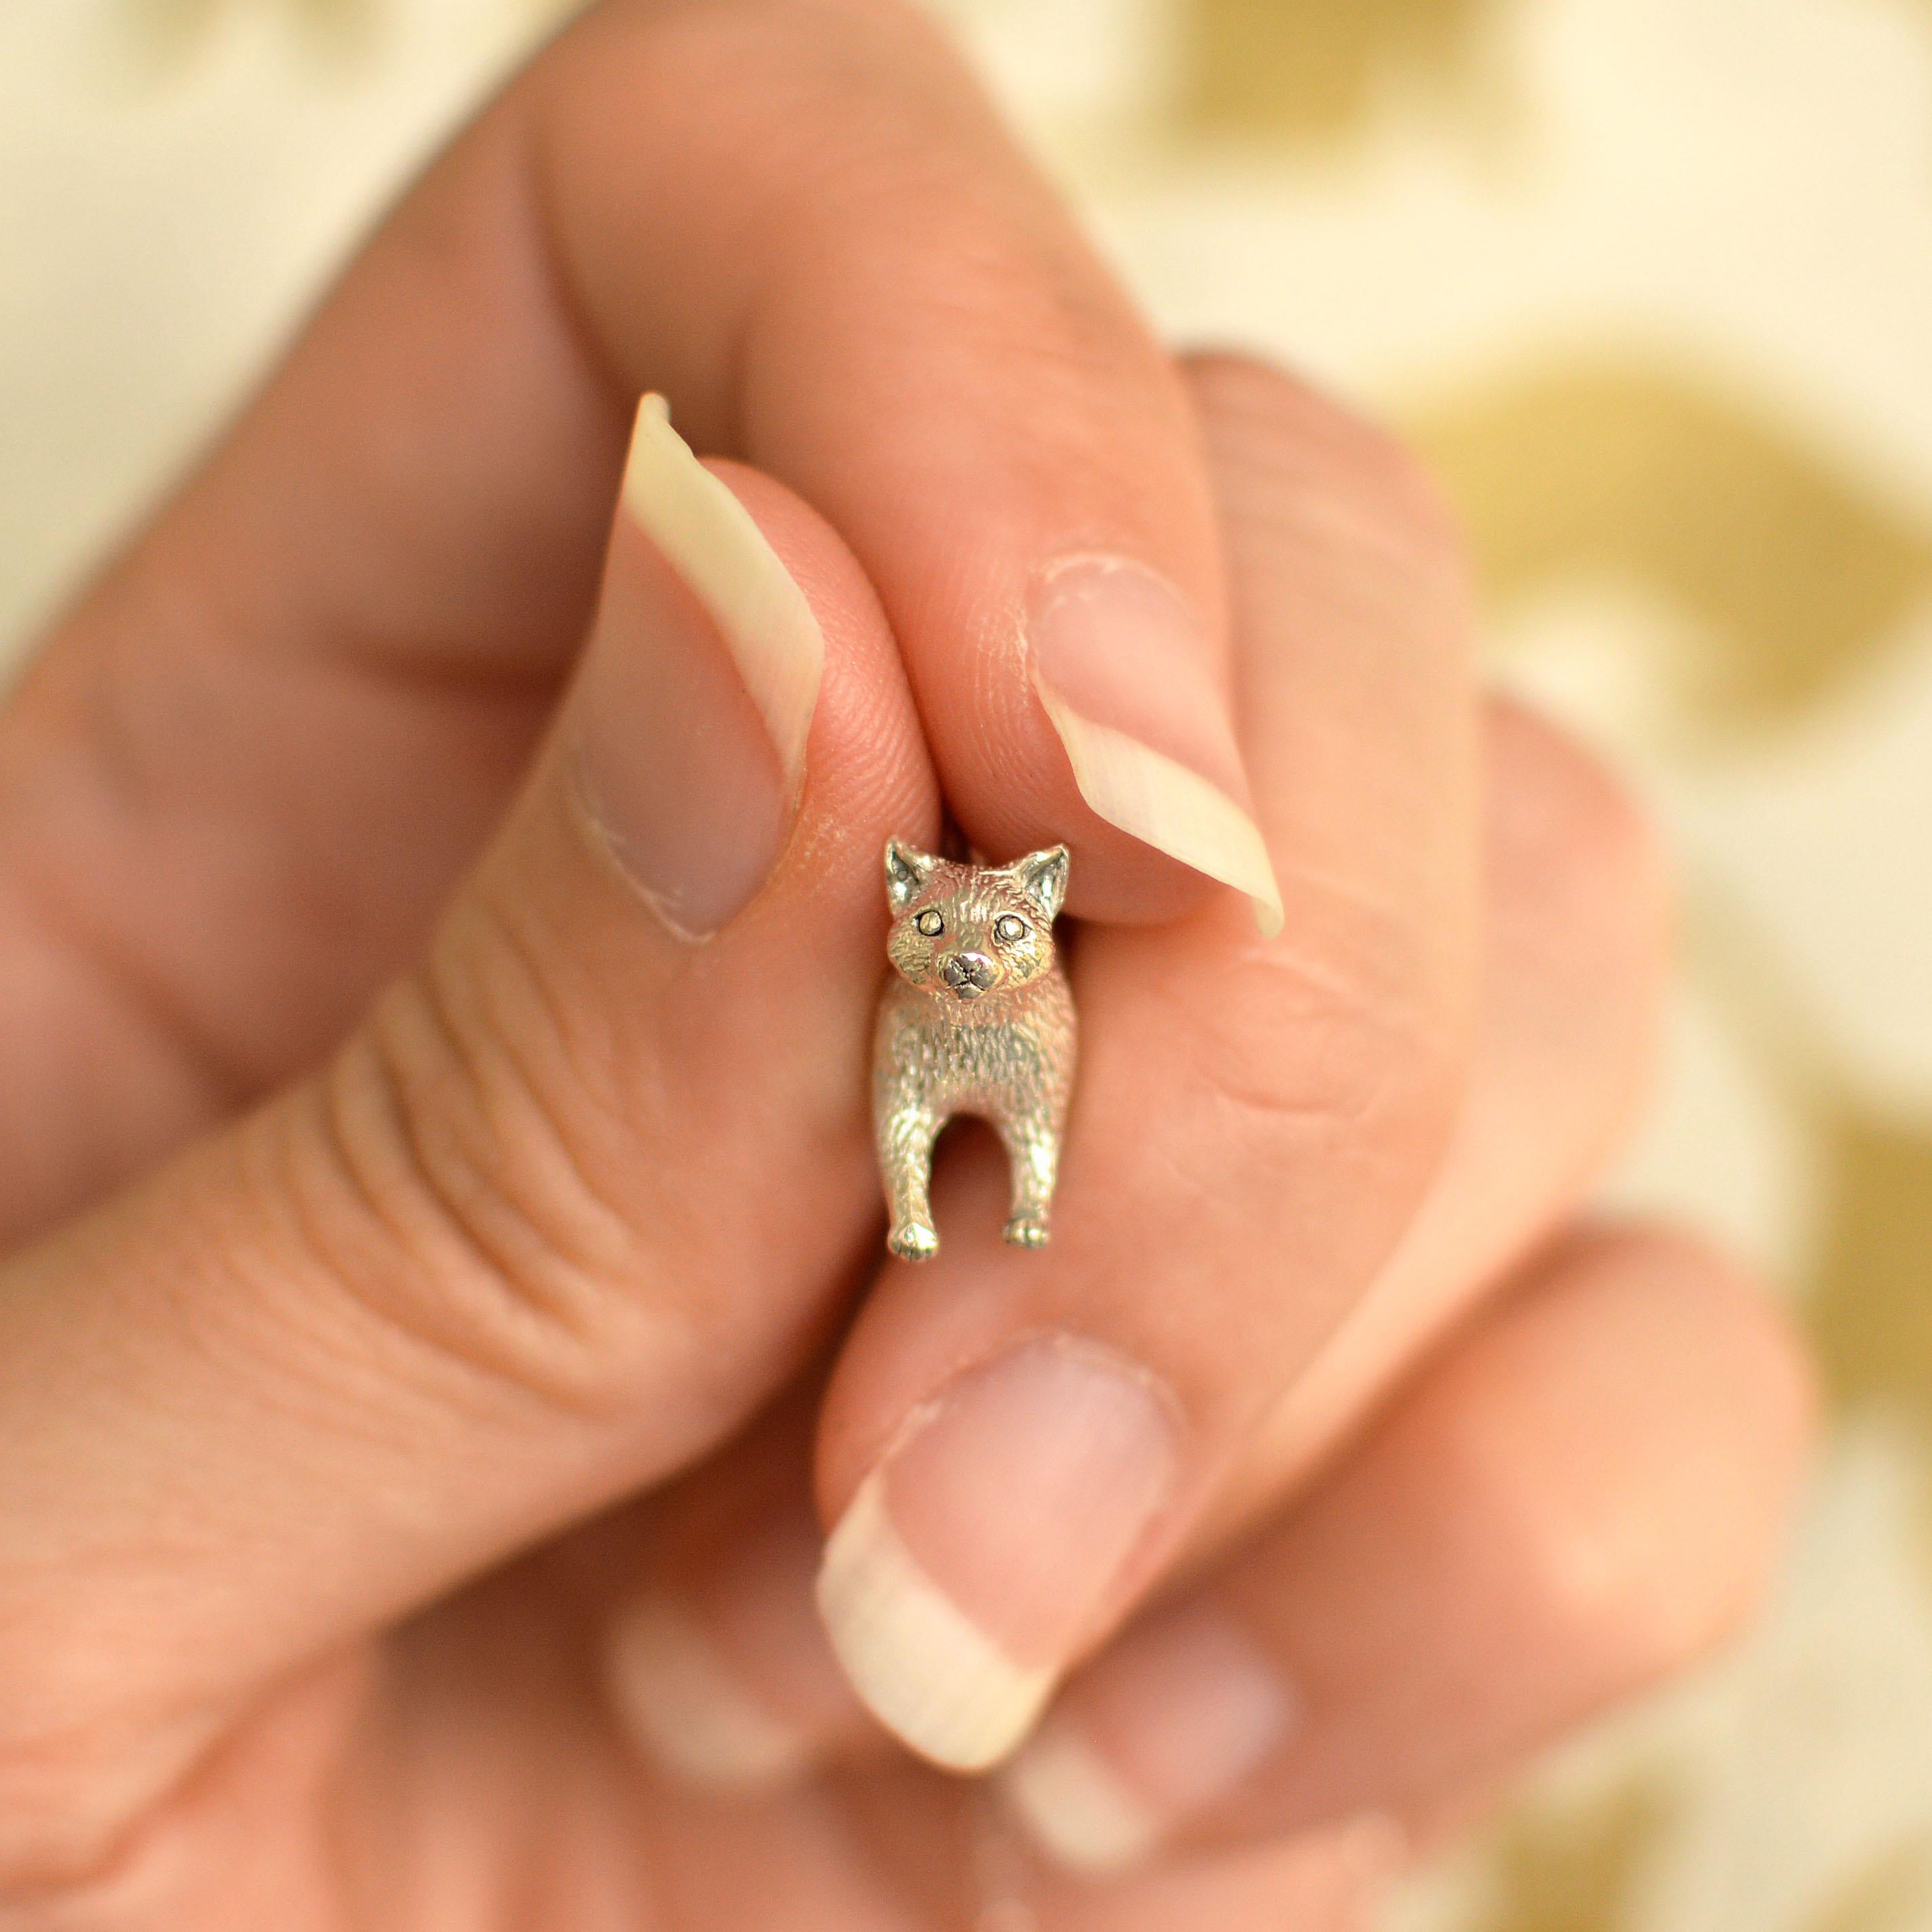 Ce joyeux petit pendentif en forme de chat flâneur est coulé en or massif 18 carats et fini à la main. Il a été créé à partir du dessin original de Lucy, sculpté à la main. 

Ce pendentif est fabriqué à Londres, au Royaume-Uni, à partir d'or recyclé